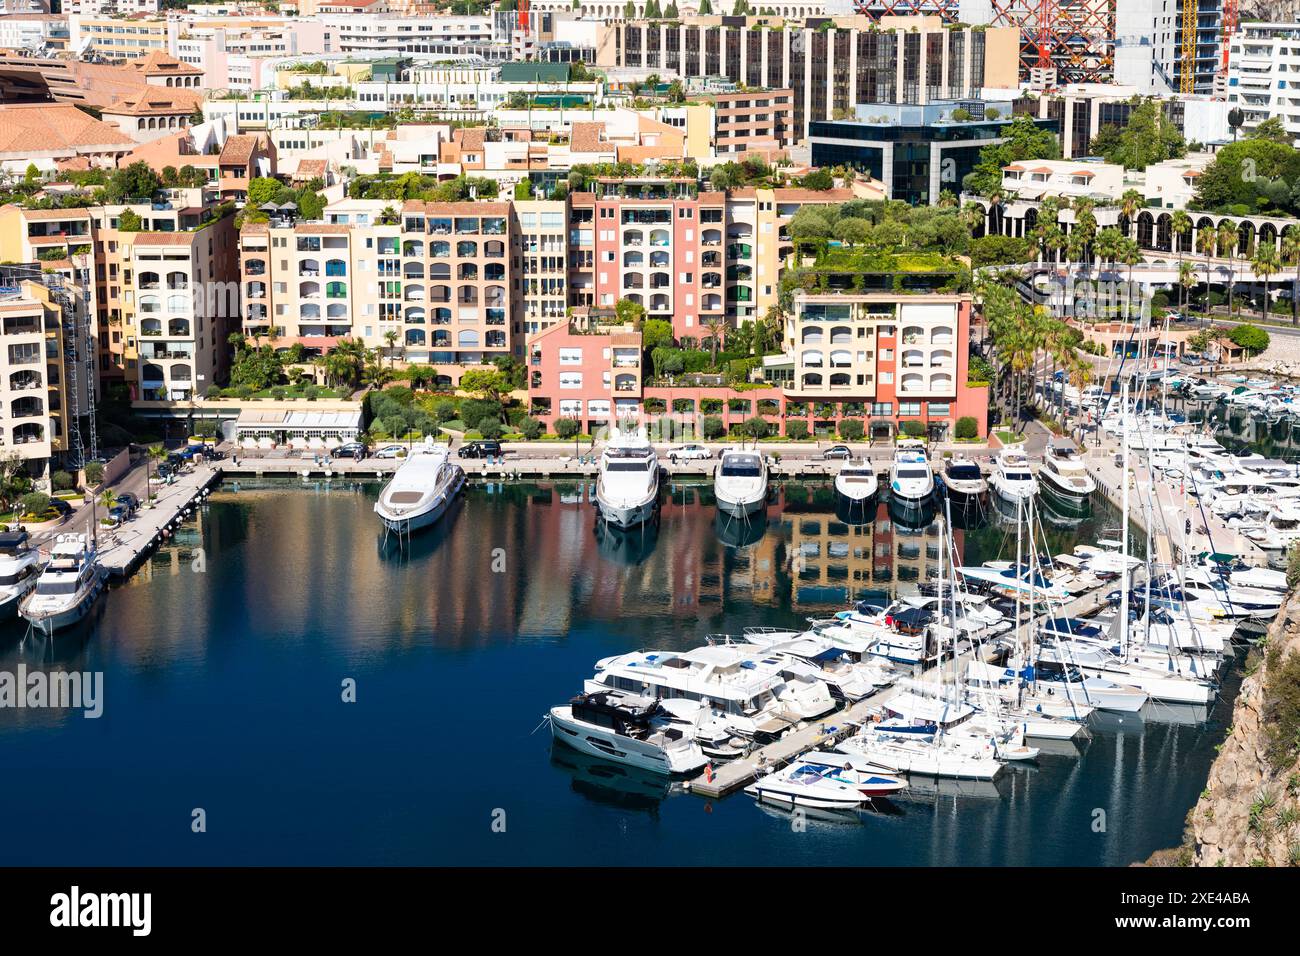 Montecarlo, Monaco - 2022 agosto: Vista panoramica del porto di Fontvielle con cielo blu e mare Foto Stock